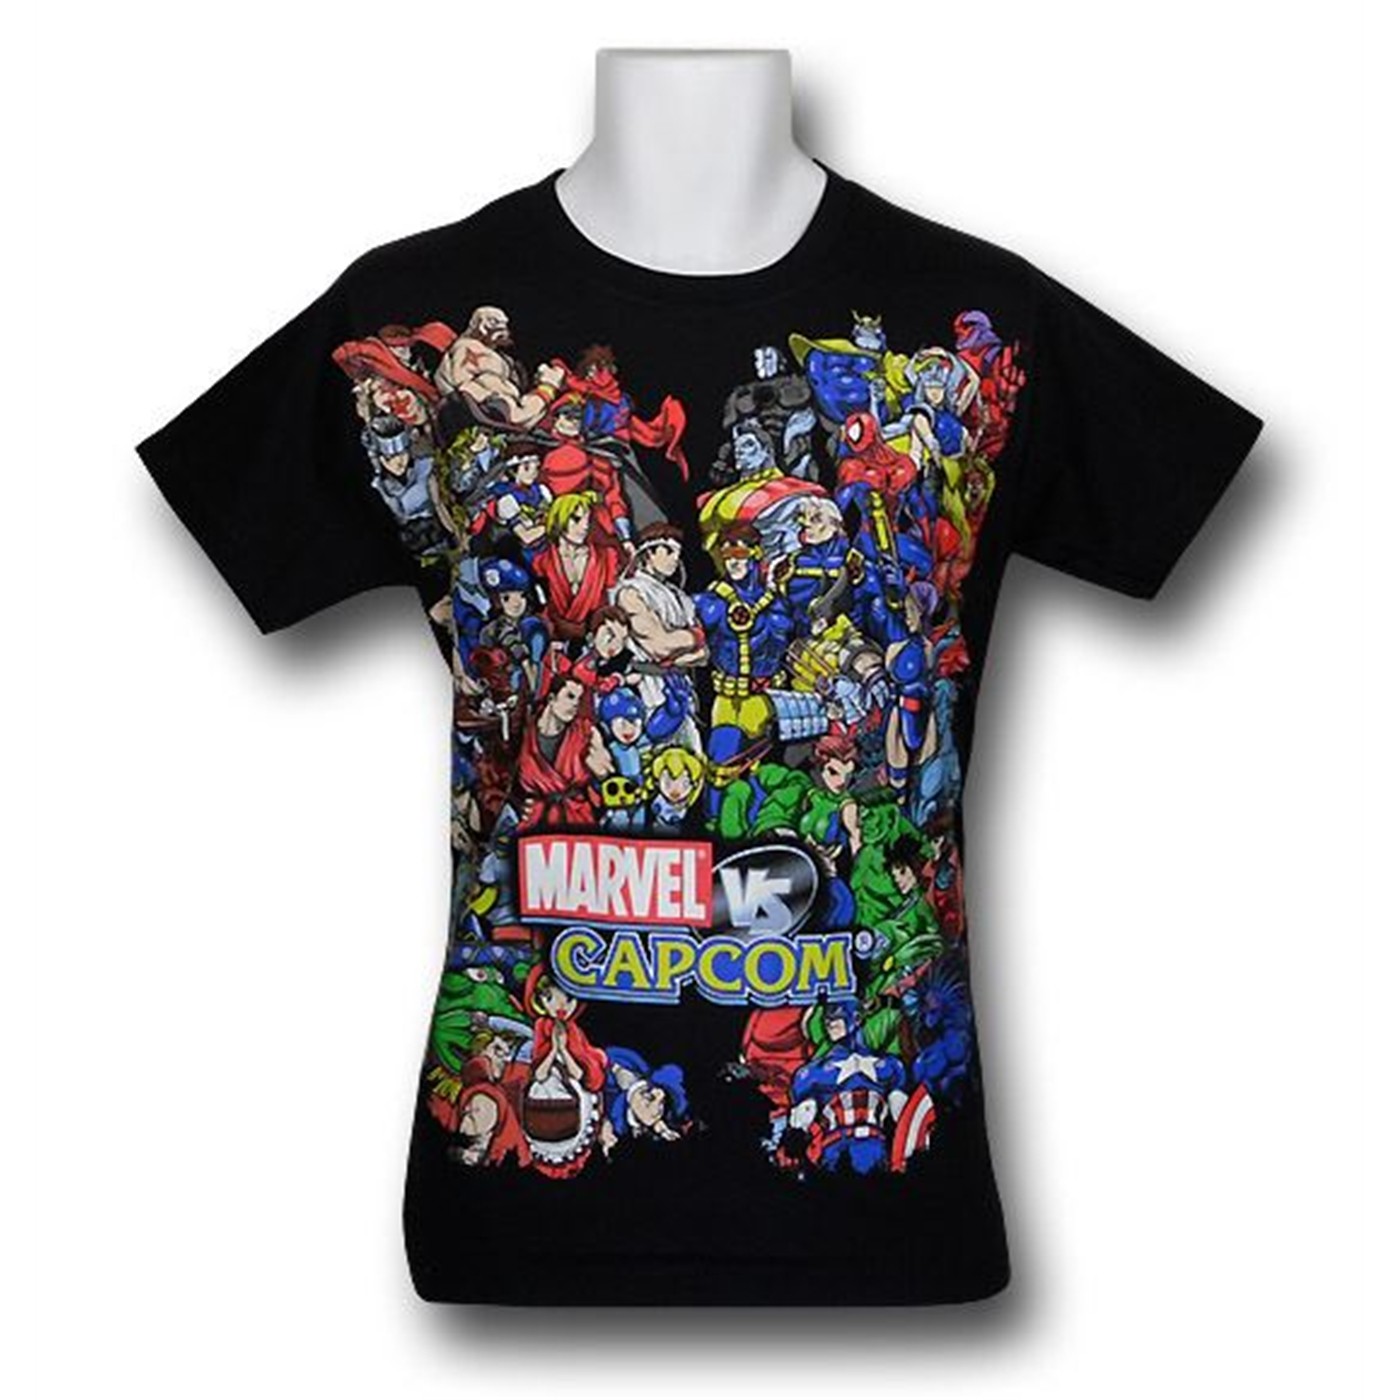 Marvel VS Capcom 30 Single Size Them Up T-Shirt